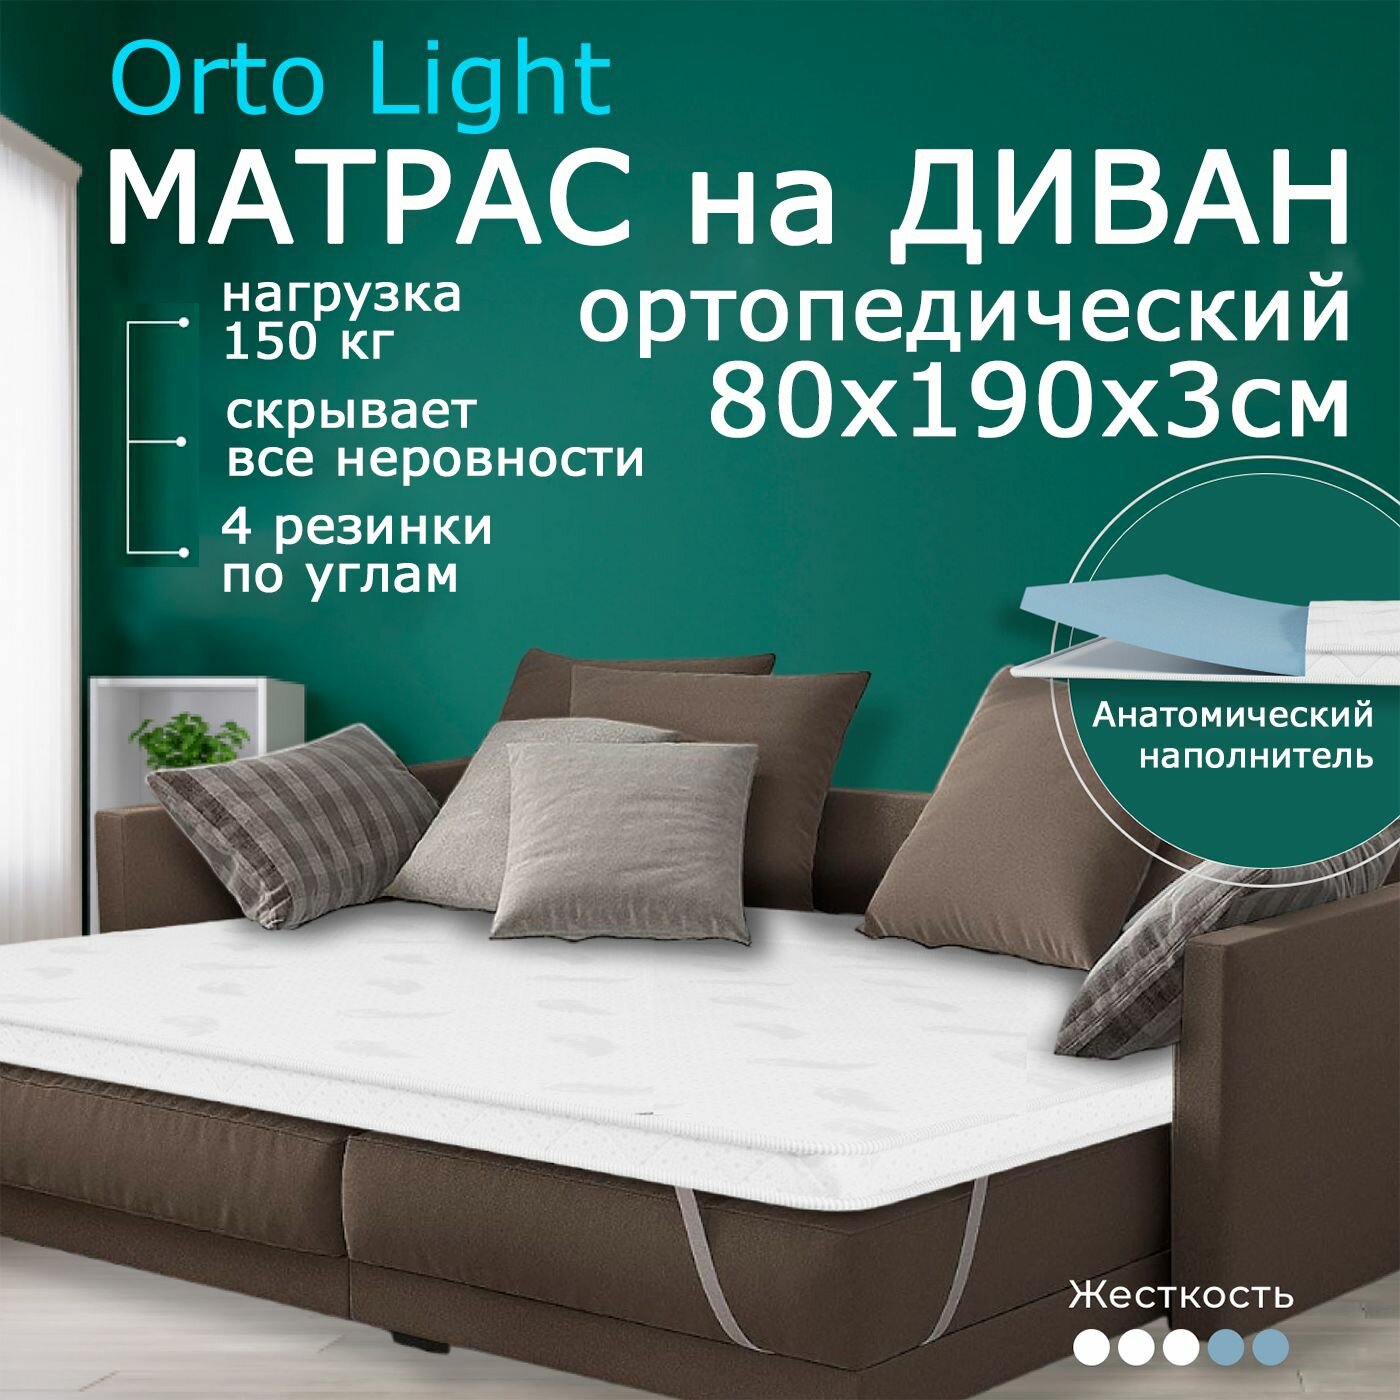 Мягкий матрас на диван 80 х 190, 3 см BEDDO Orto Light, двусторонний, беспружинный с ортопедическими свойствами